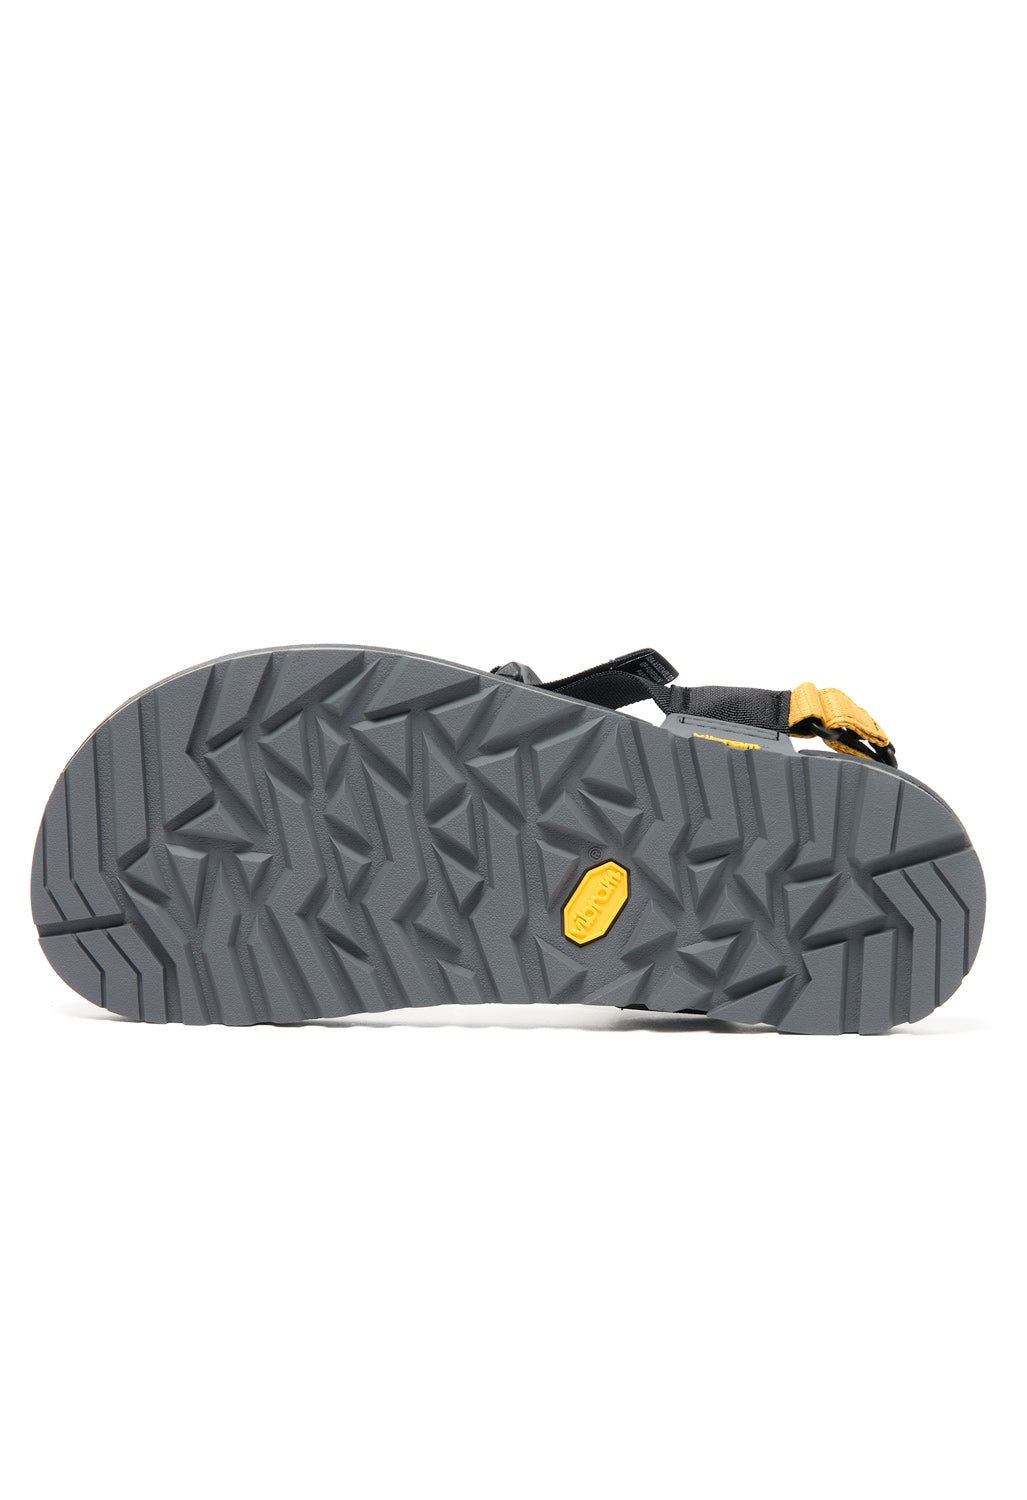 Bedrock Sandals Cairn Evo 3D Pro Sandals - Yellow Ochre